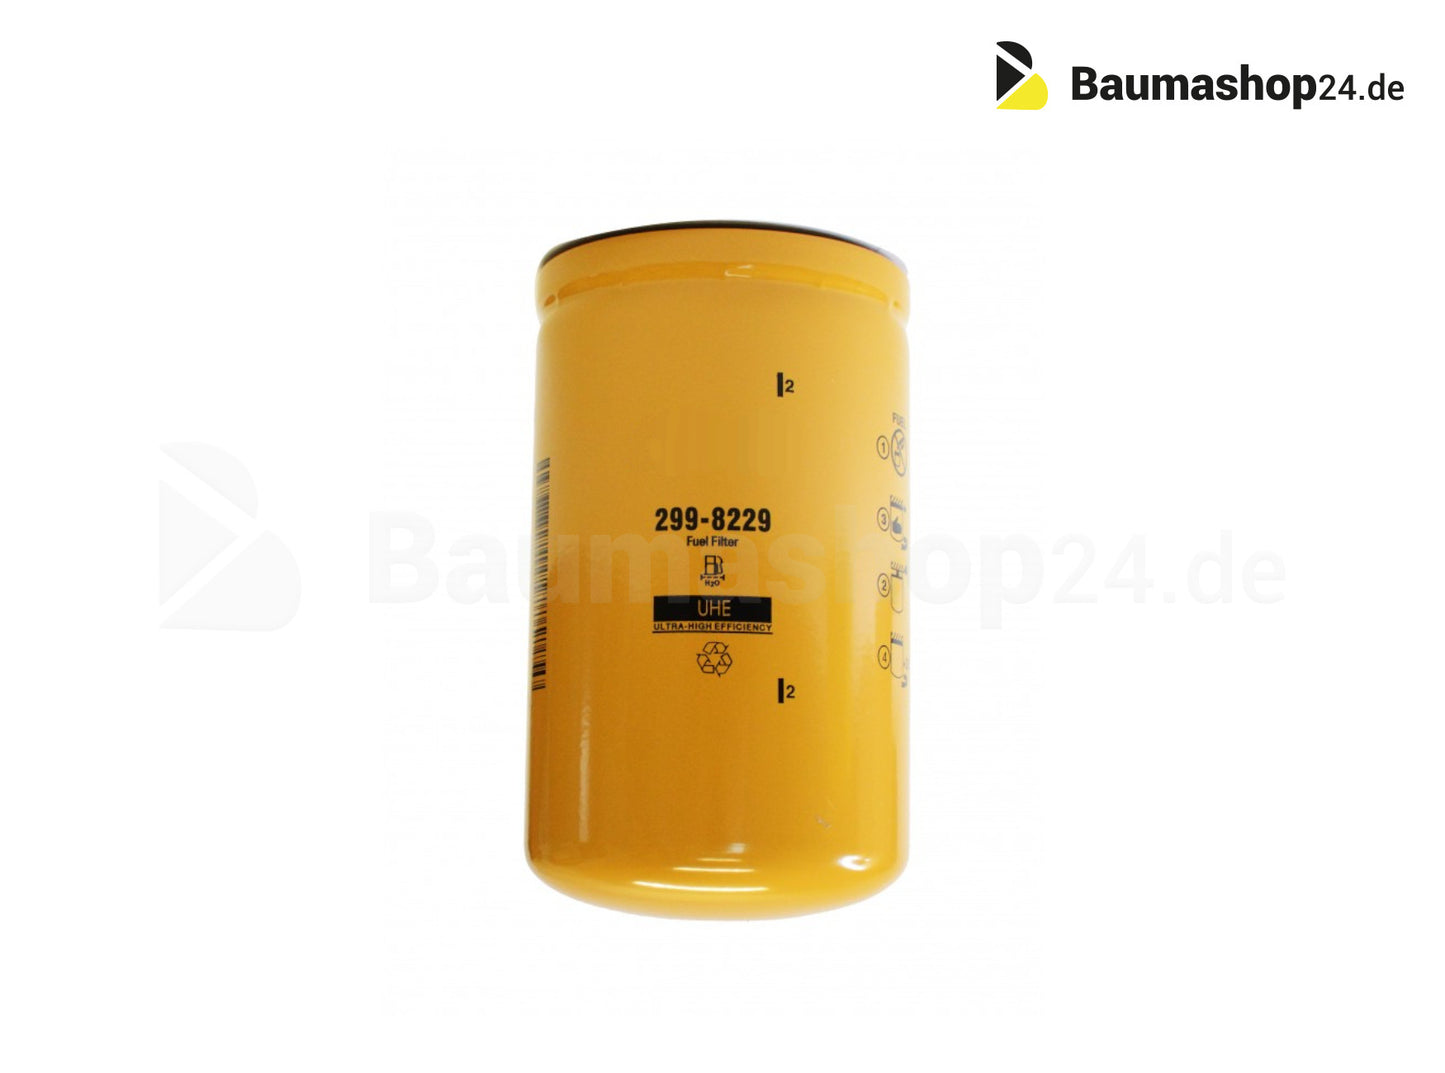 Caterpillar Fuel Filter 299-8229 for 924-938 | D3-D5 | M313-M322